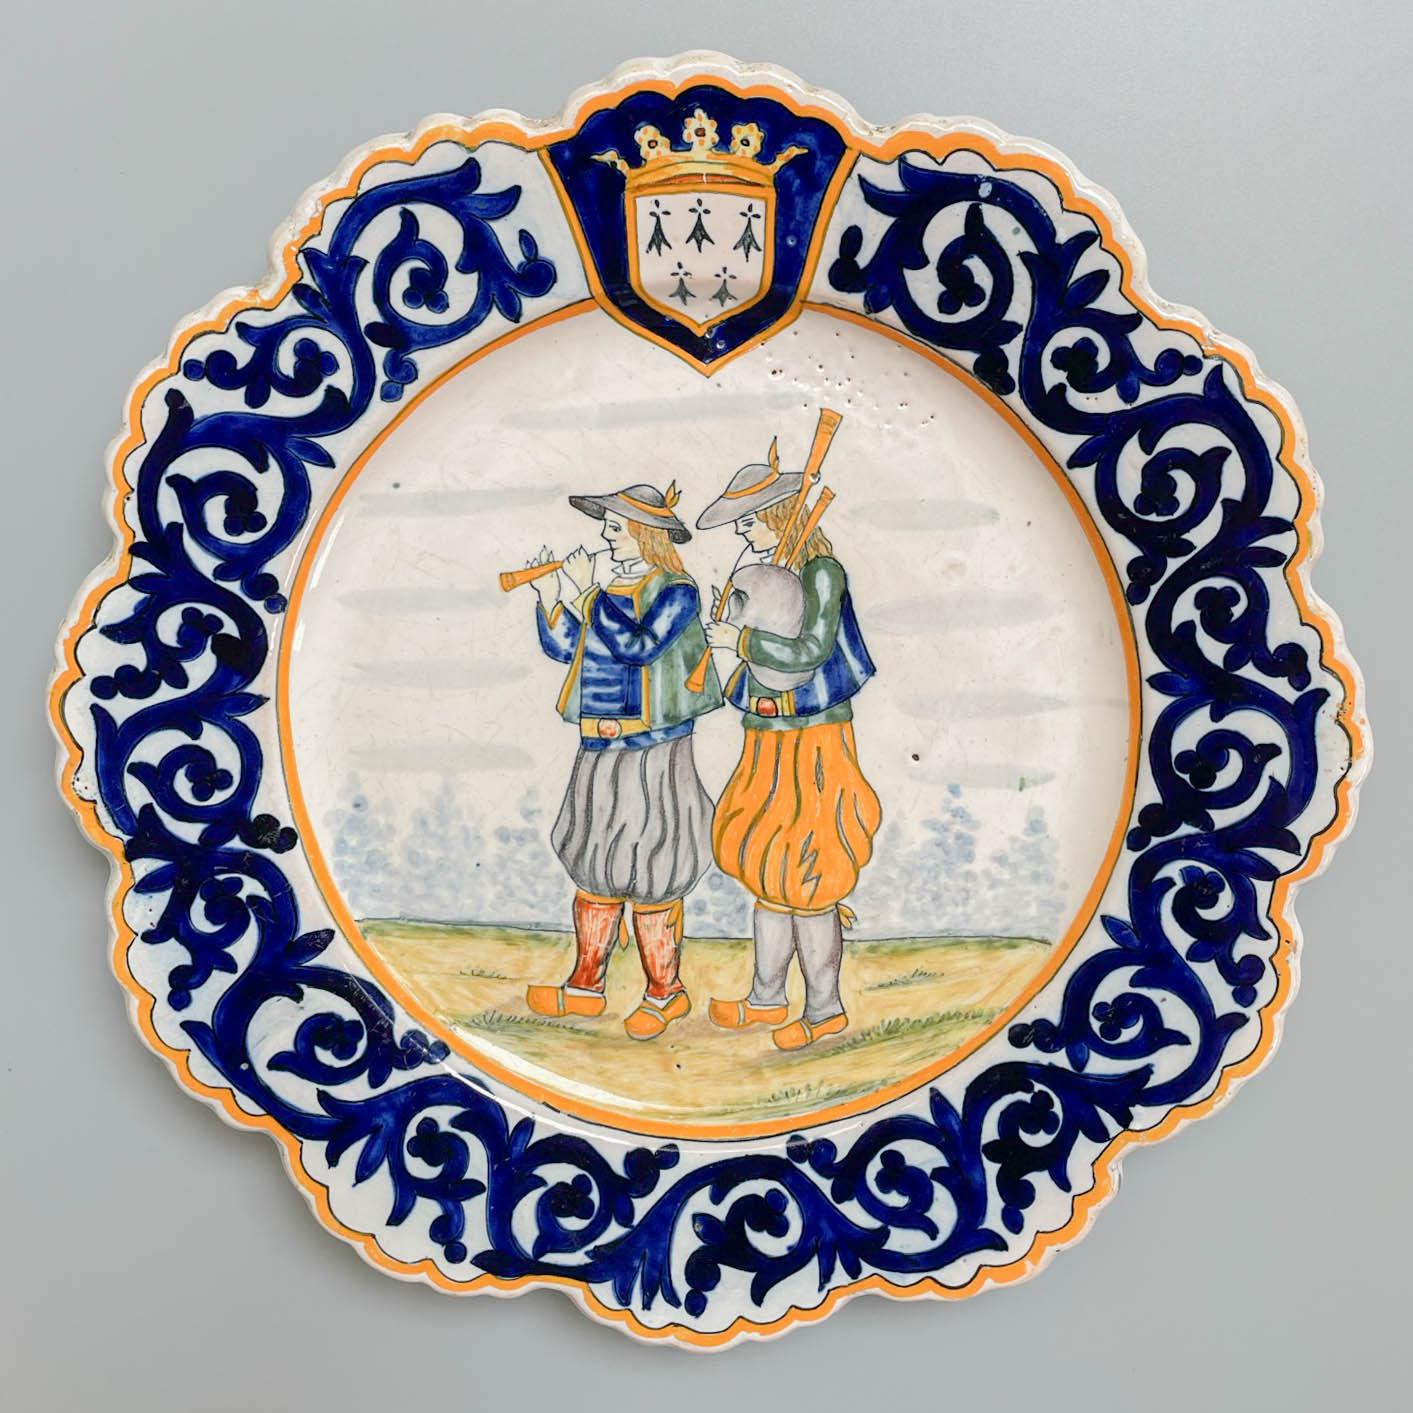 Henriot Quimper, französischer Fayence-Teller mit handgemalter Dekoration, der ein Musikerpaar darstellt, einen mit einer Pfeife und einen mit einem traditionellen Dudelsack. Blaue Blattbordüre mit bretonischem Wappen am oberen Rand. Eine gute